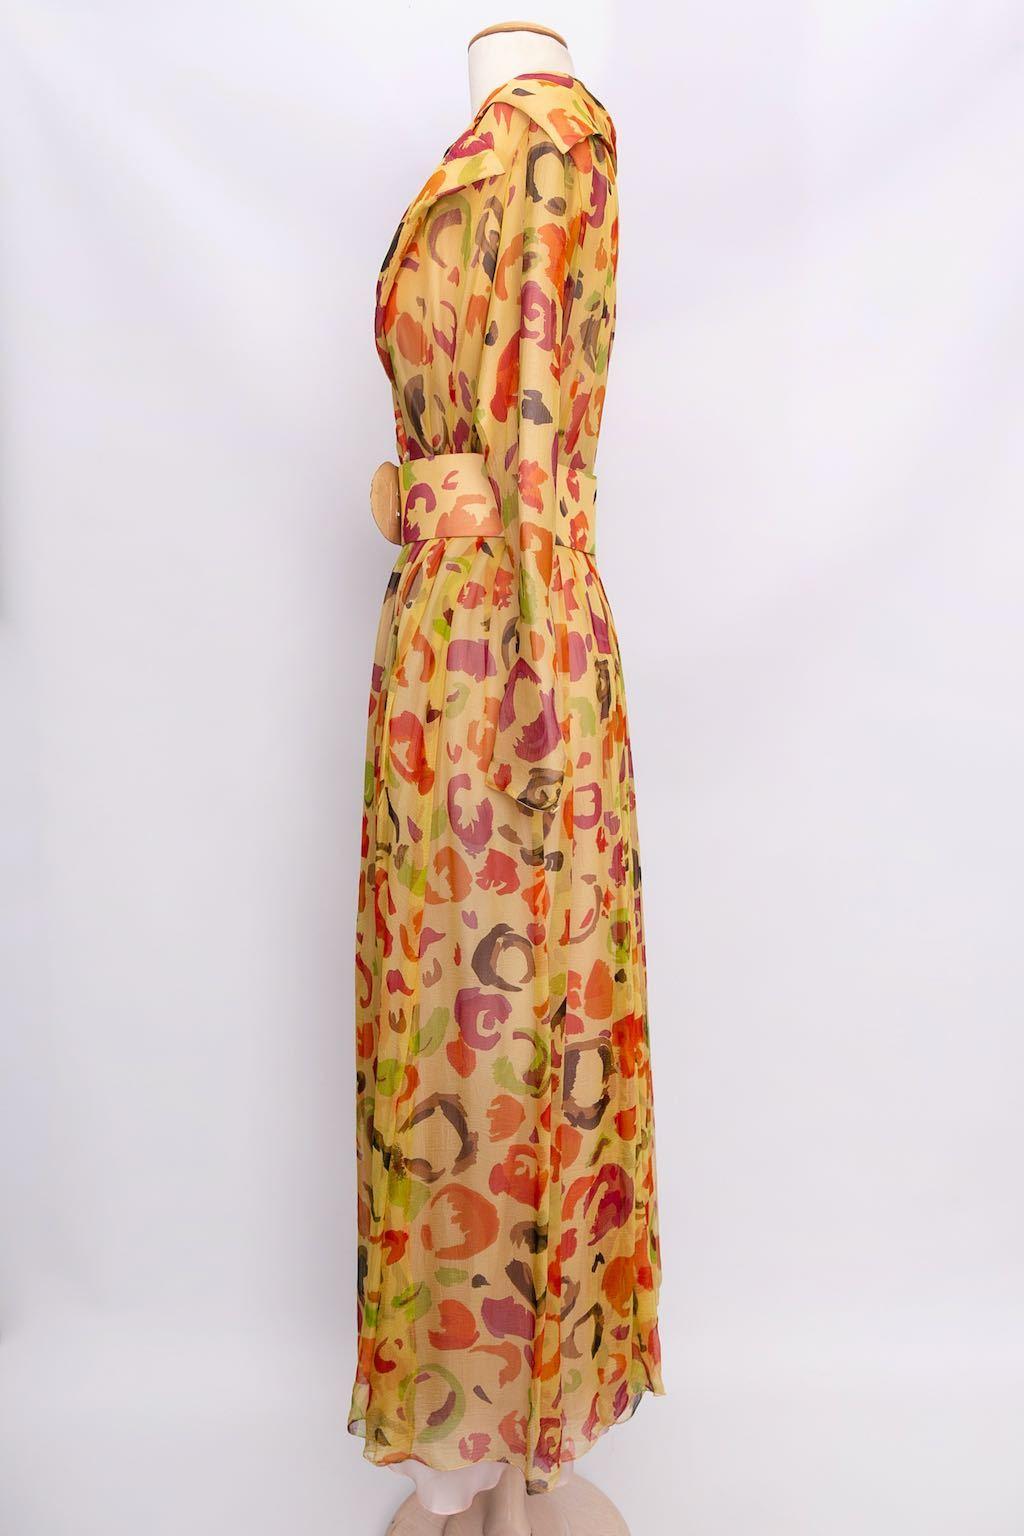 Ted Lapidus Haute Couture - Wickelkleid aus Seidenchiffon. Keine Zusammensetzung oder Größe Tag, es passt eine Größe 36FR.

Zusätzliche Informationen: 
Abmessungen: Schultern: 42 cm (16.54